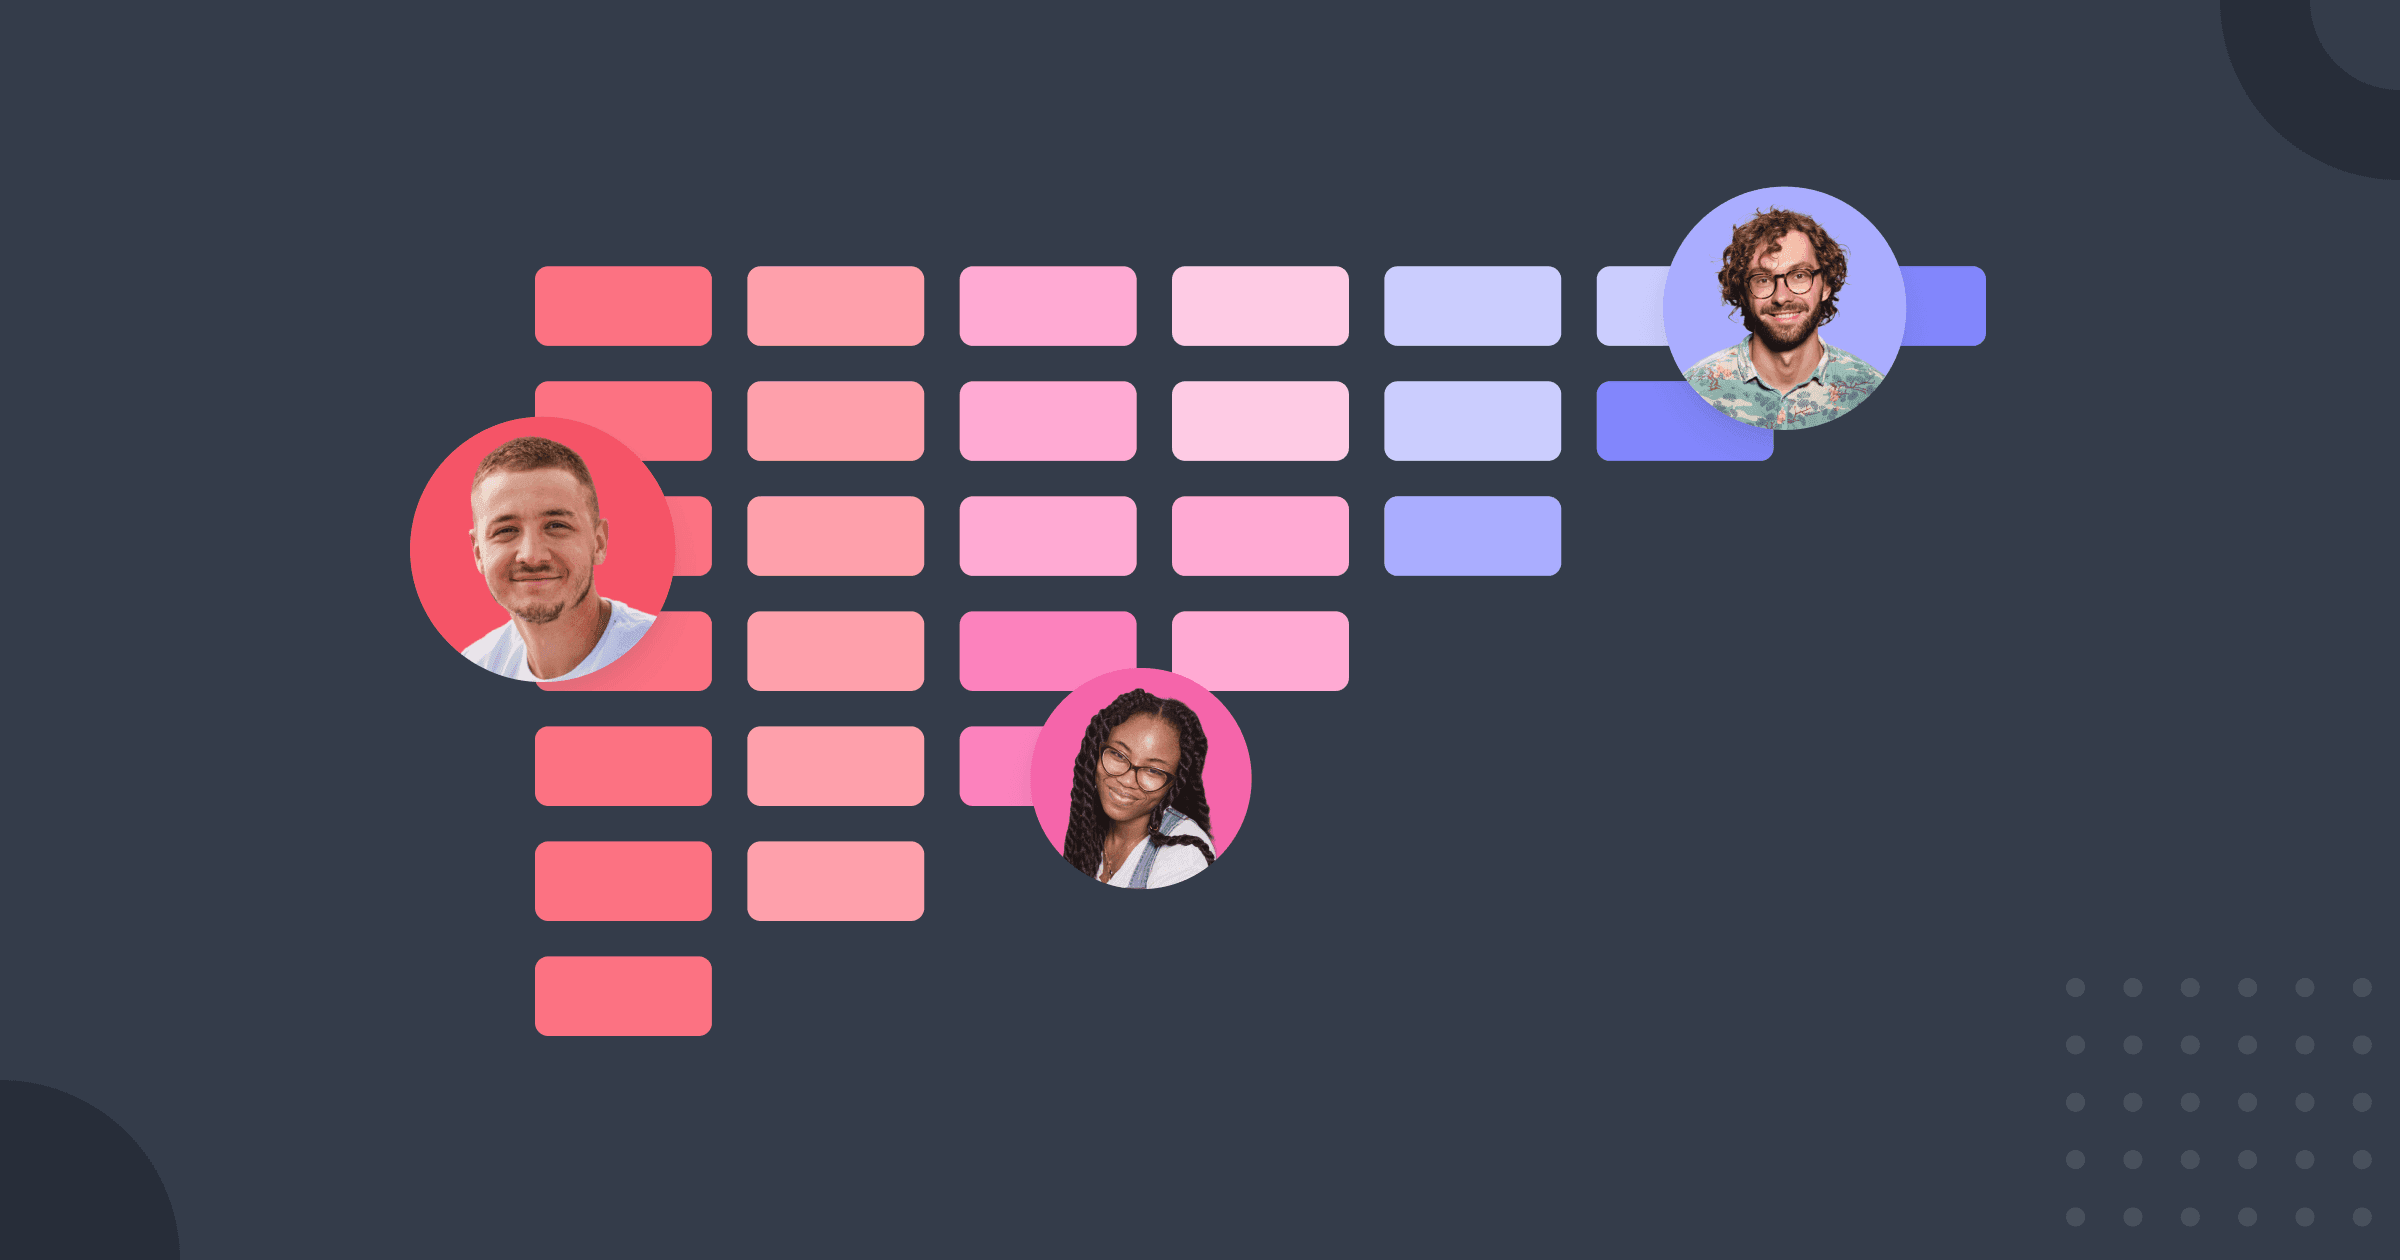 Três avatares de usuários, cada um correspondendo a um grupo de células em uma planilha que representam cohorts.